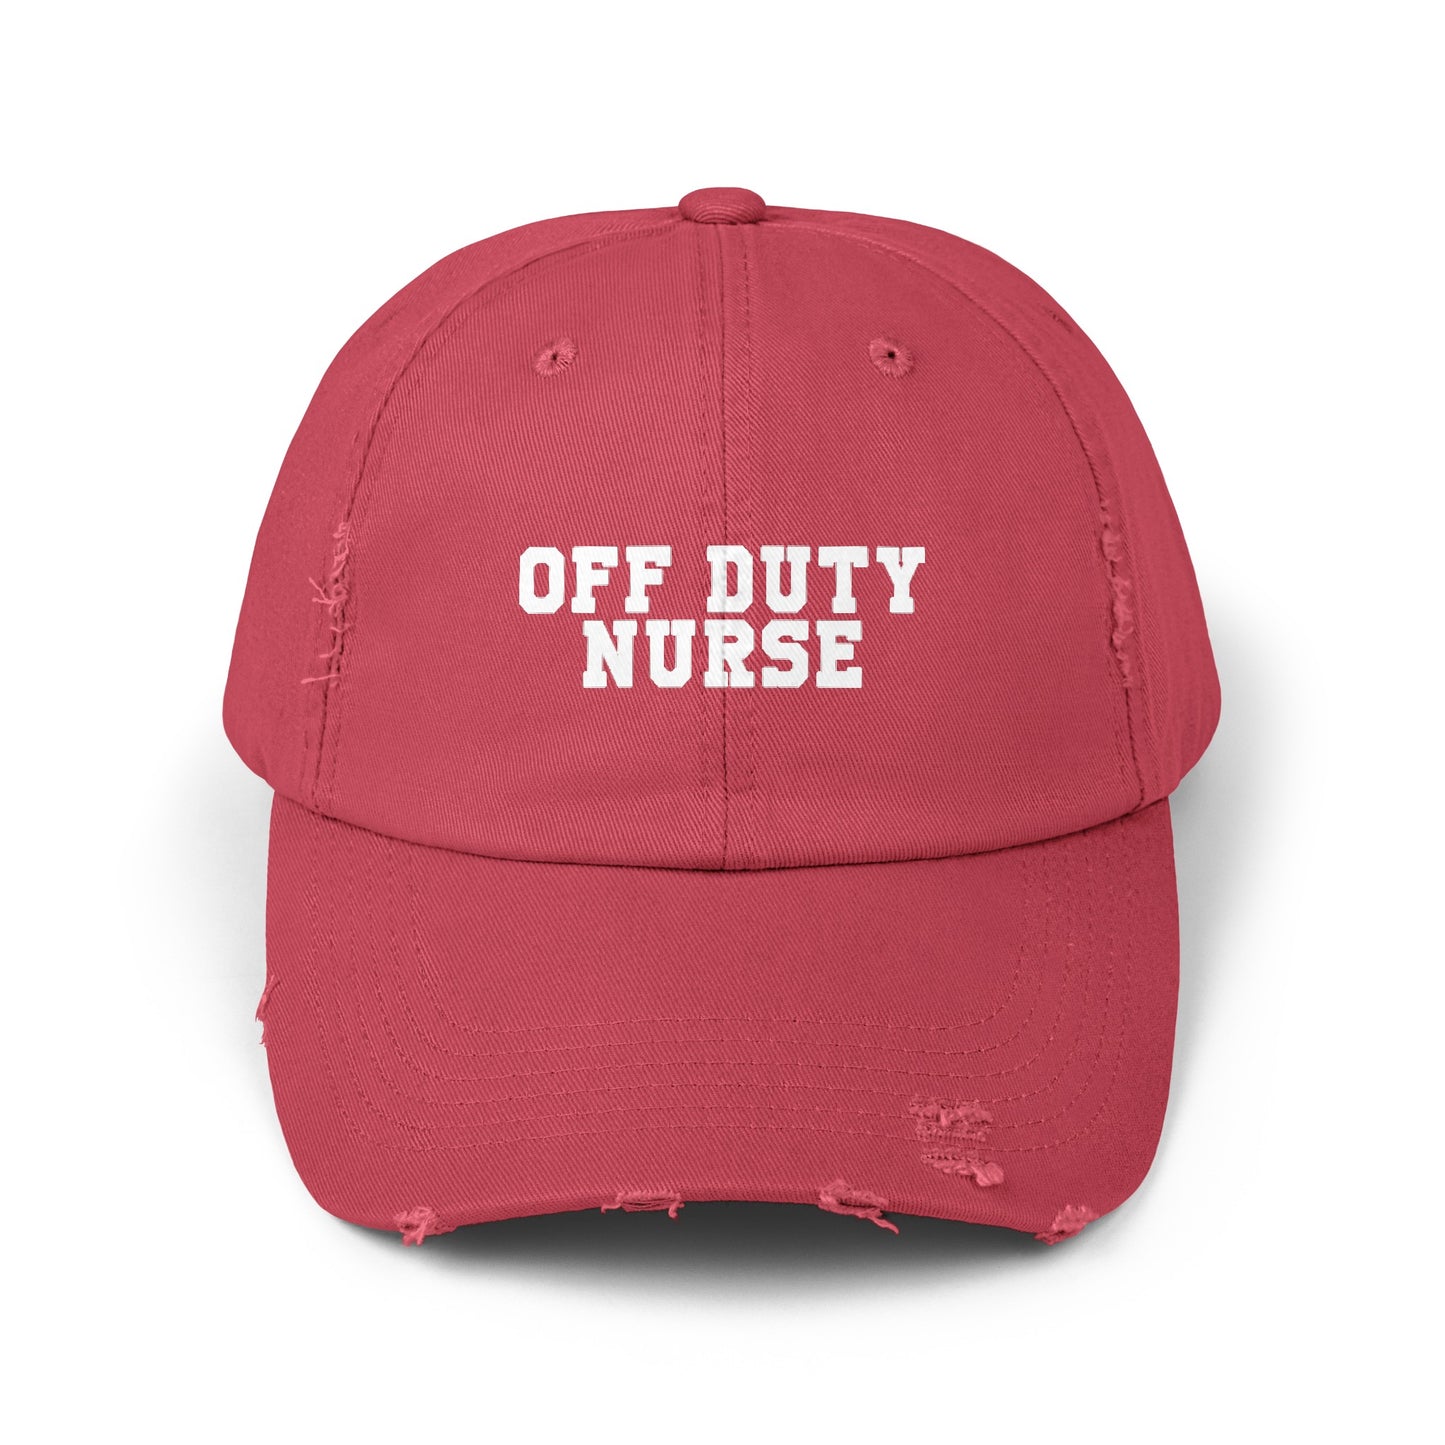 Off-duty Nurse hat